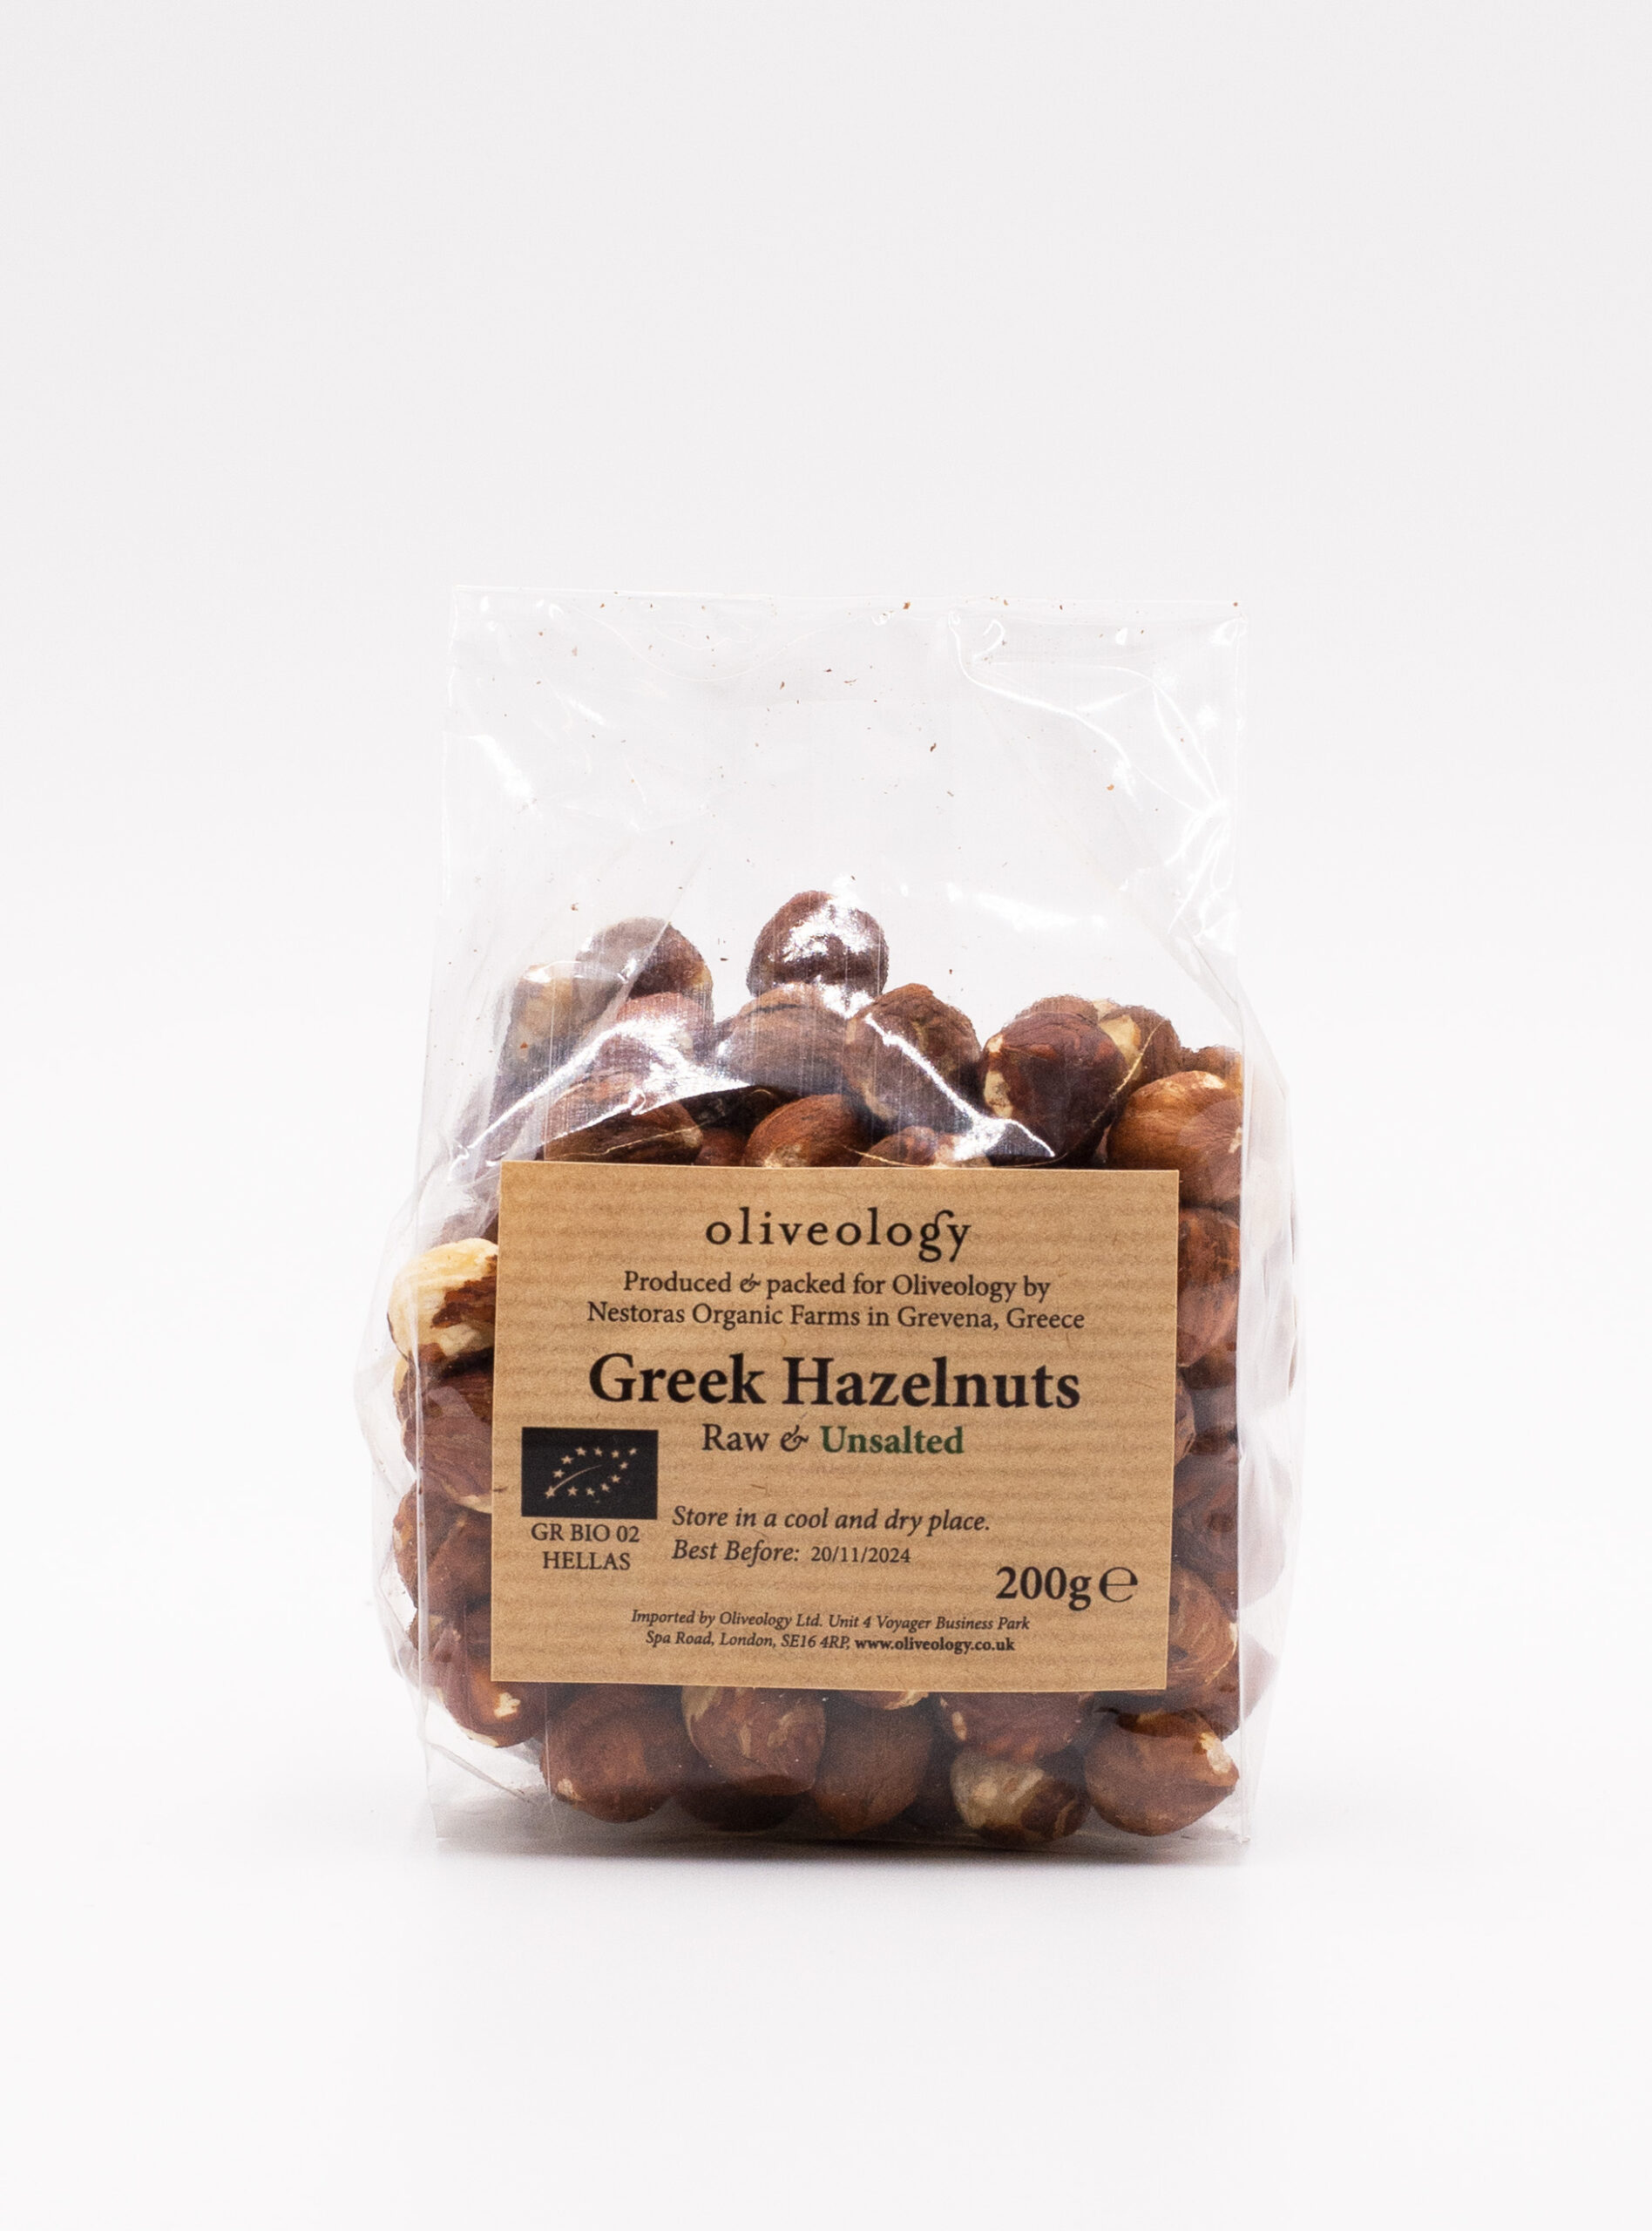 Greek Hazelnuts - Raw & Unsalted